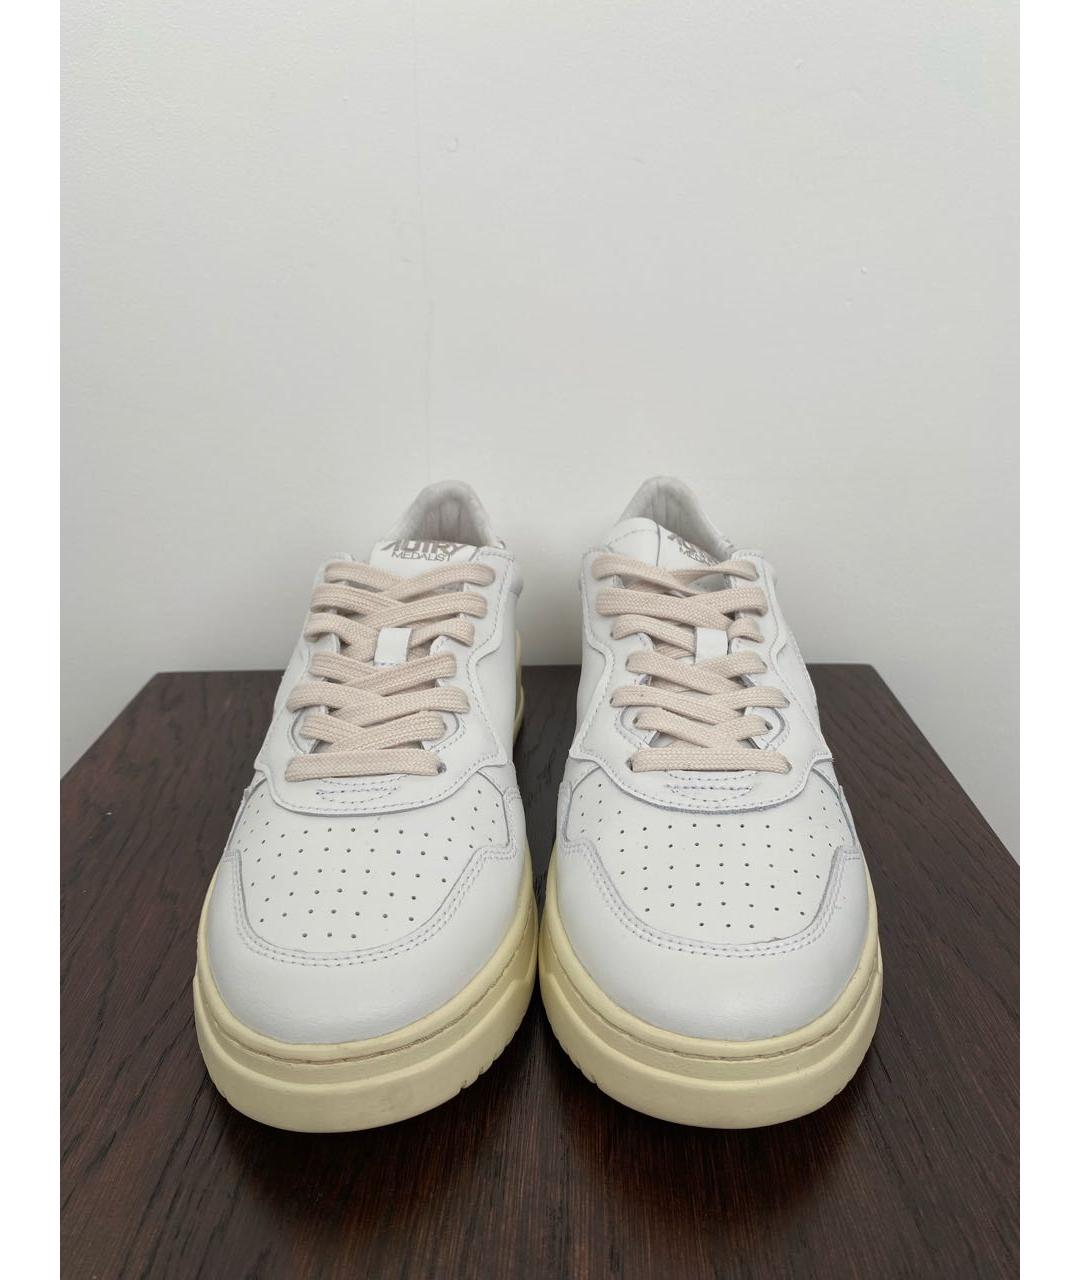 AUTRY Белые кожаные низкие кроссовки / кеды, фото 2